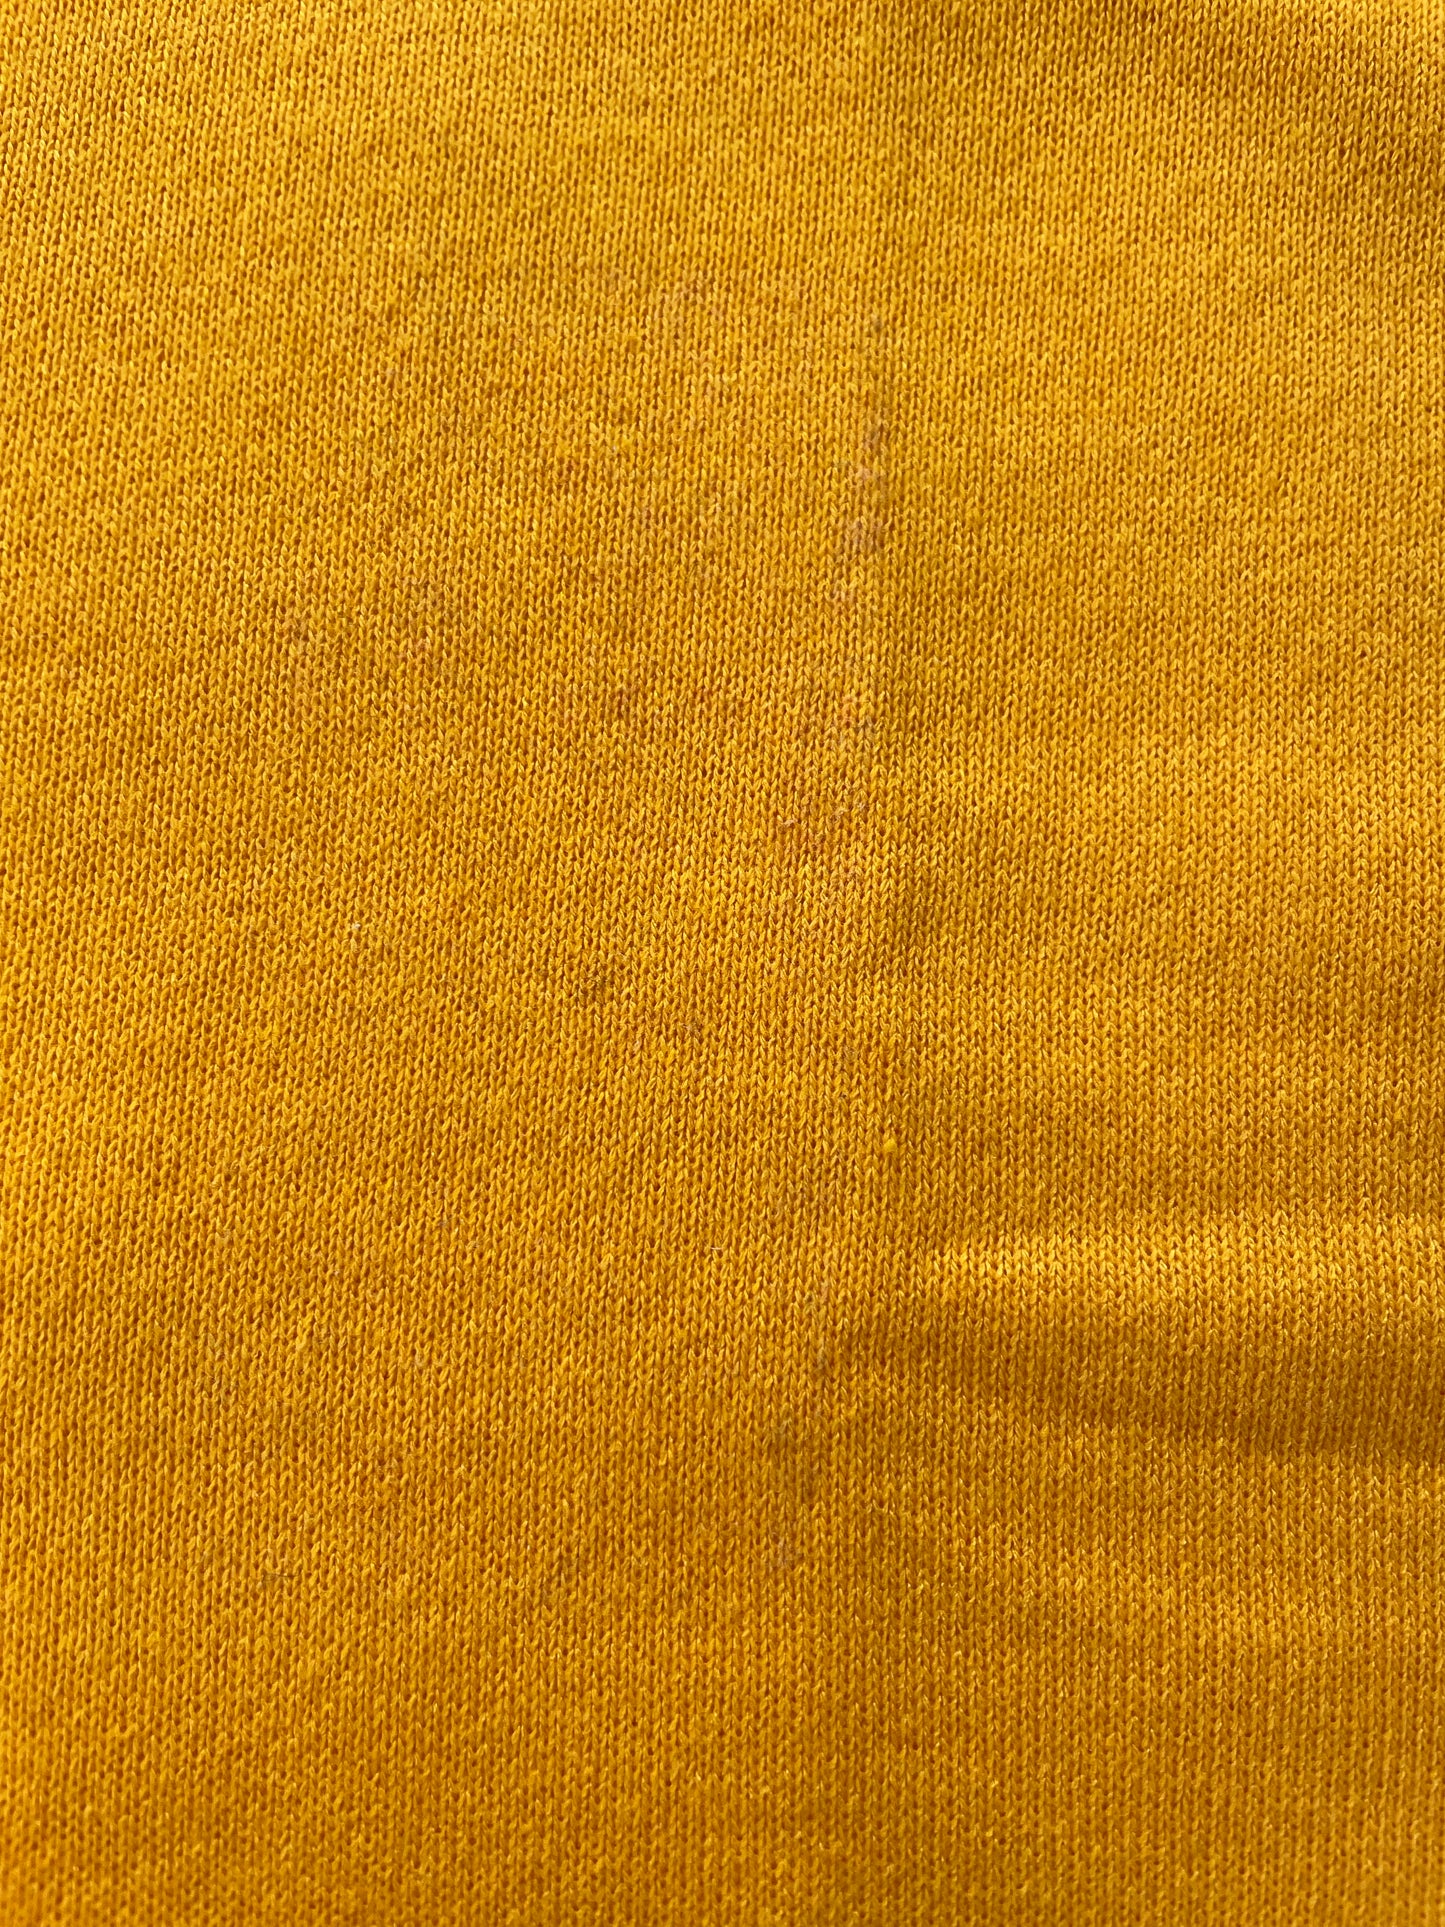 80s Deadstock Marigold Yellow Jerzees Sweatshirt